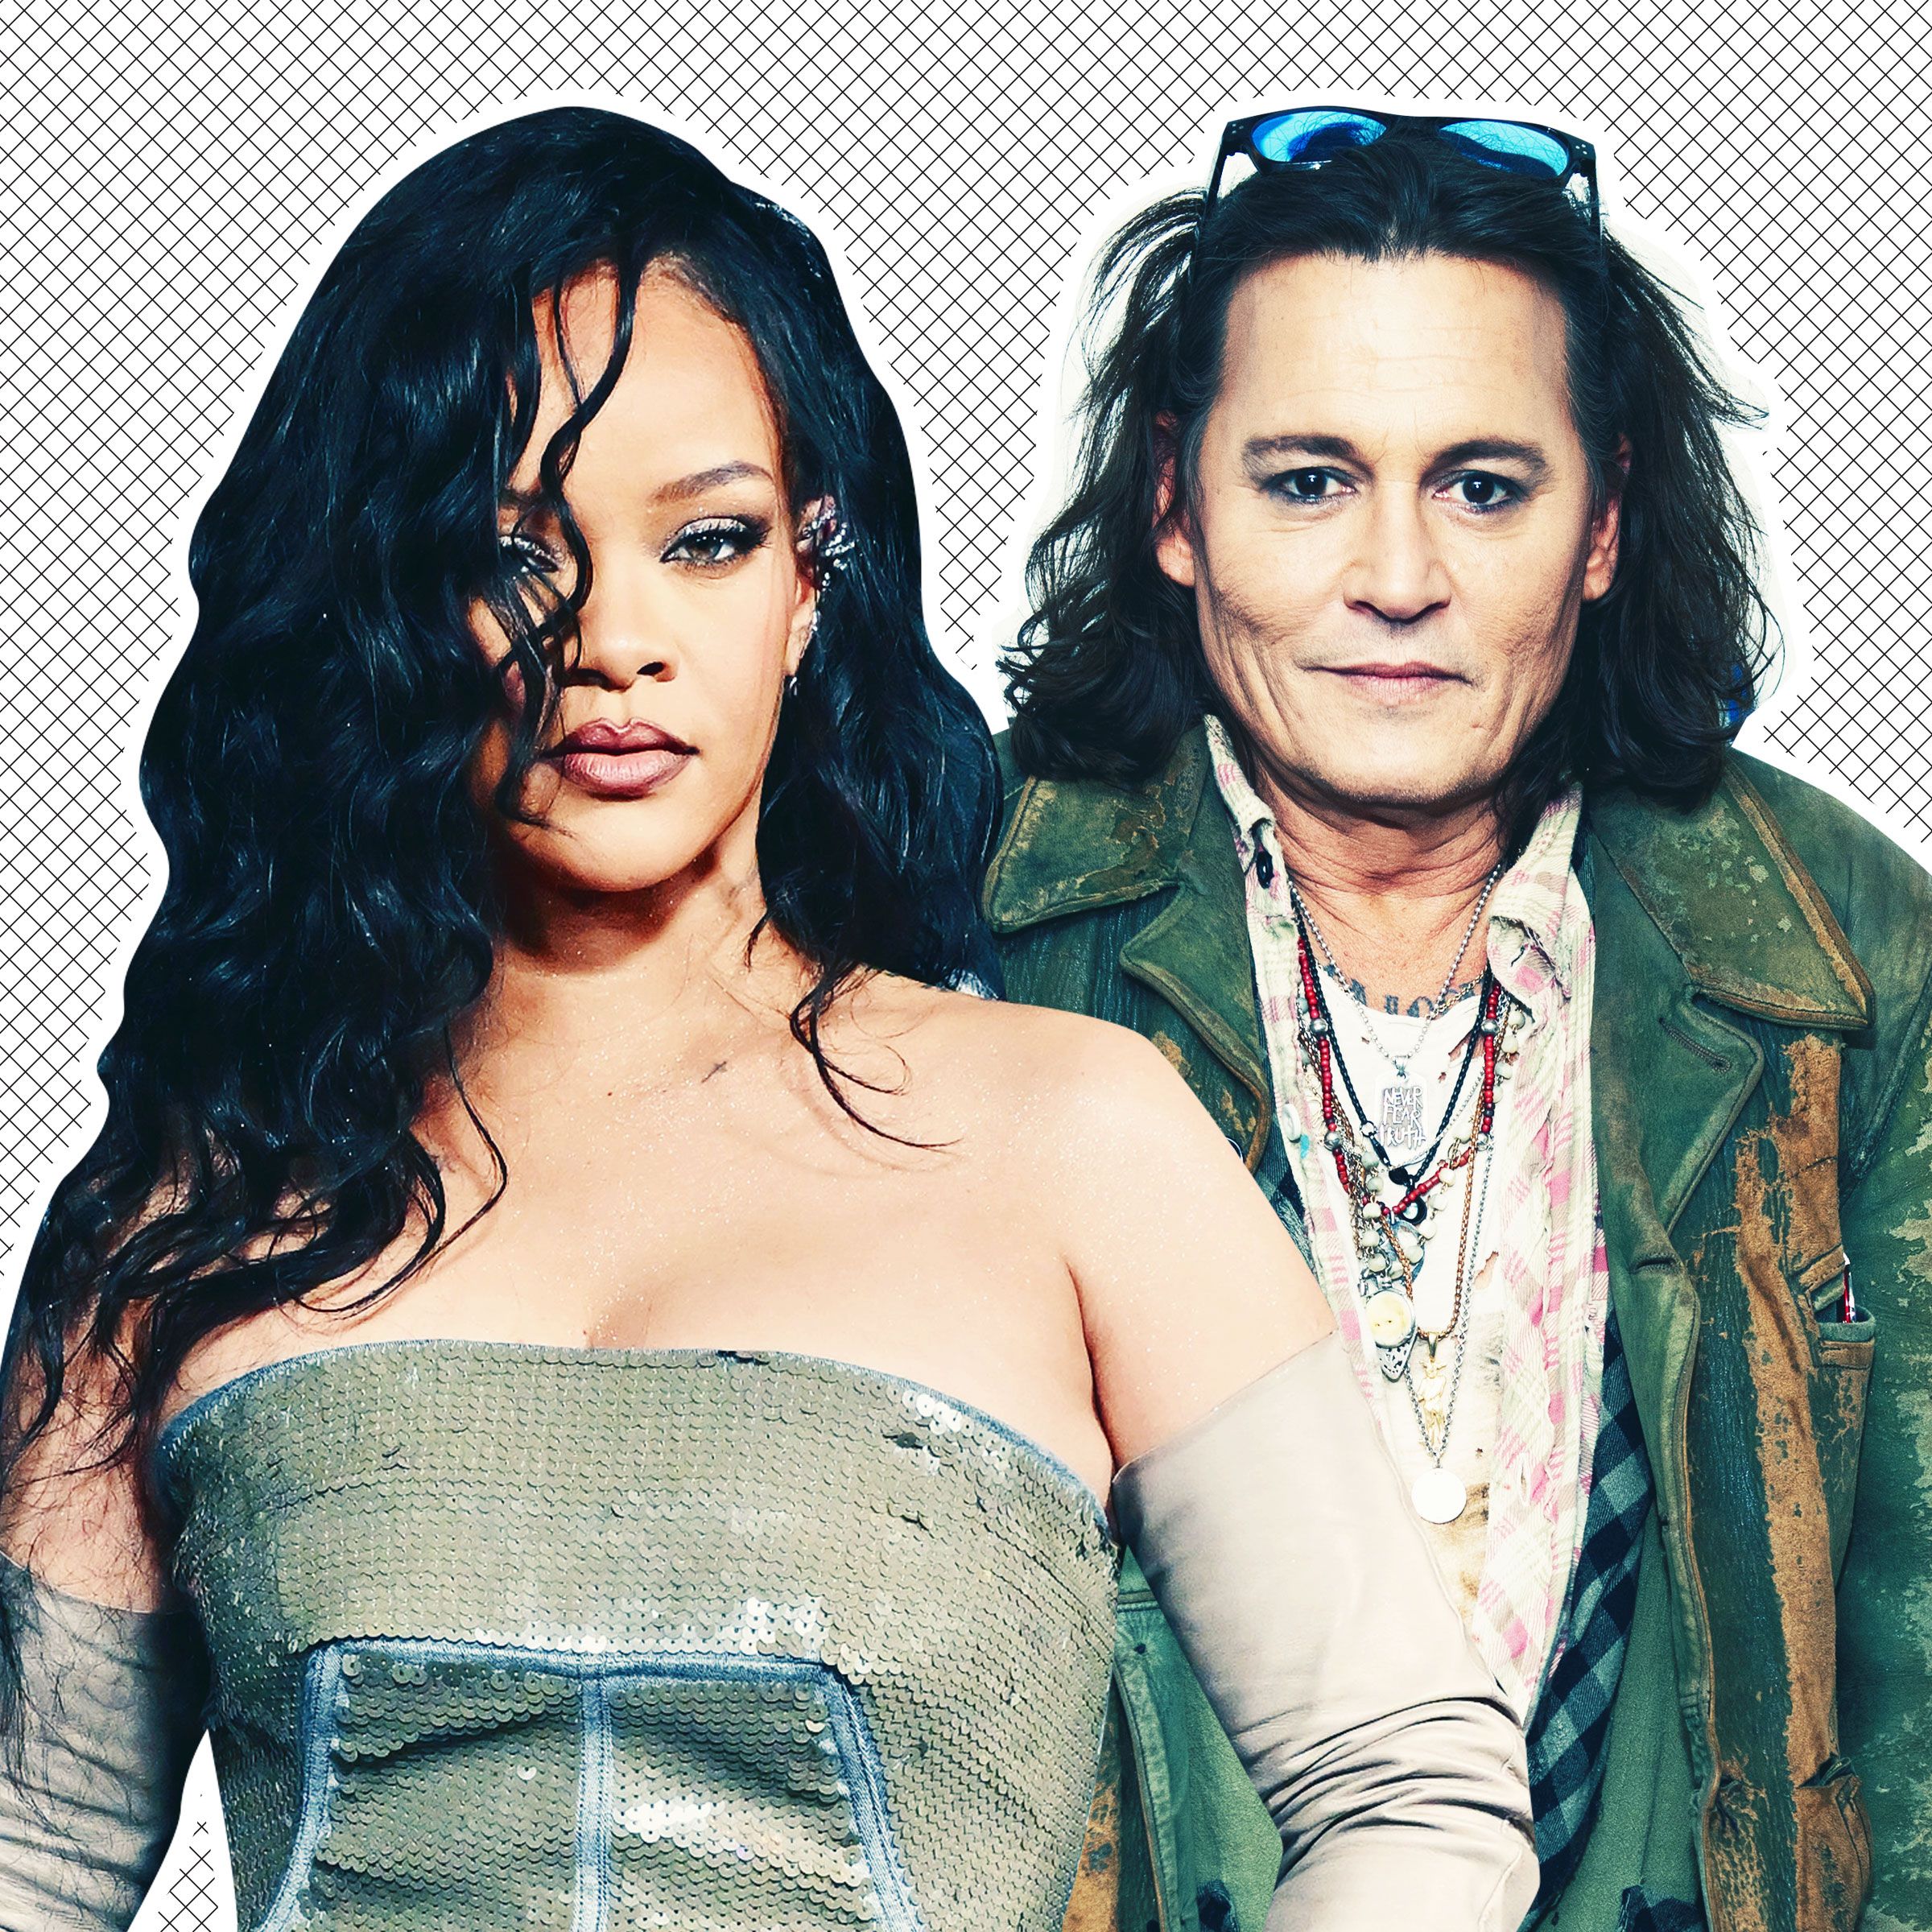 Porno De 2018 Da Rihanna - Rihanna to Give Johnny Depp Guest Slot at Fenty Show: Report